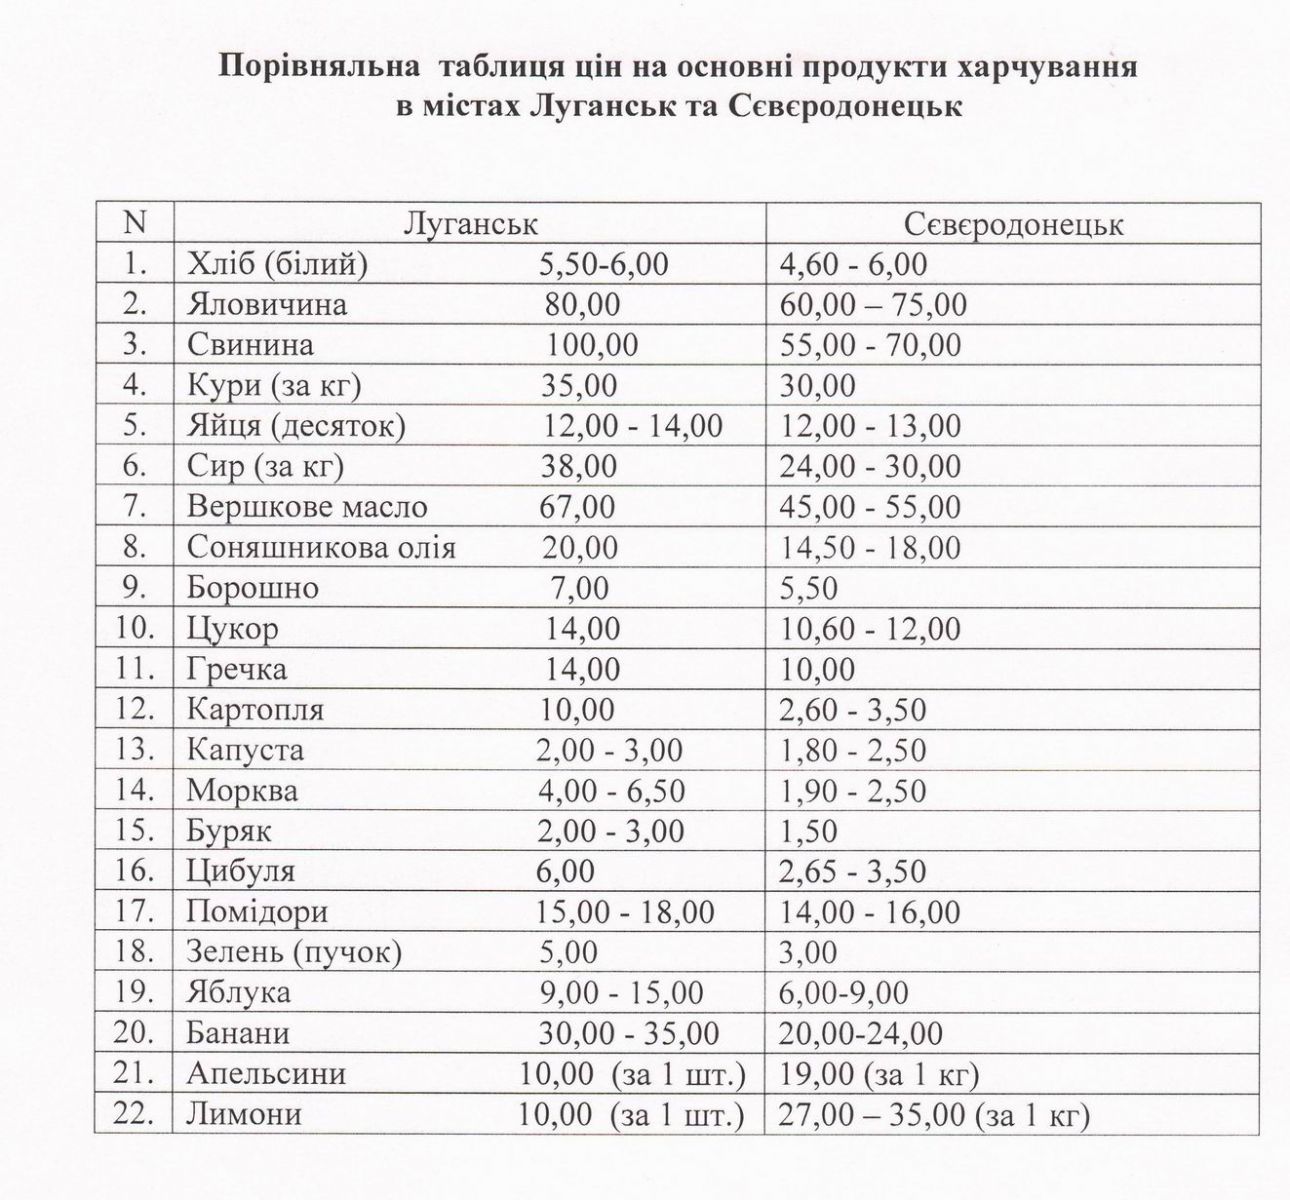 Цены на продукты в Луганске и Северодонецке